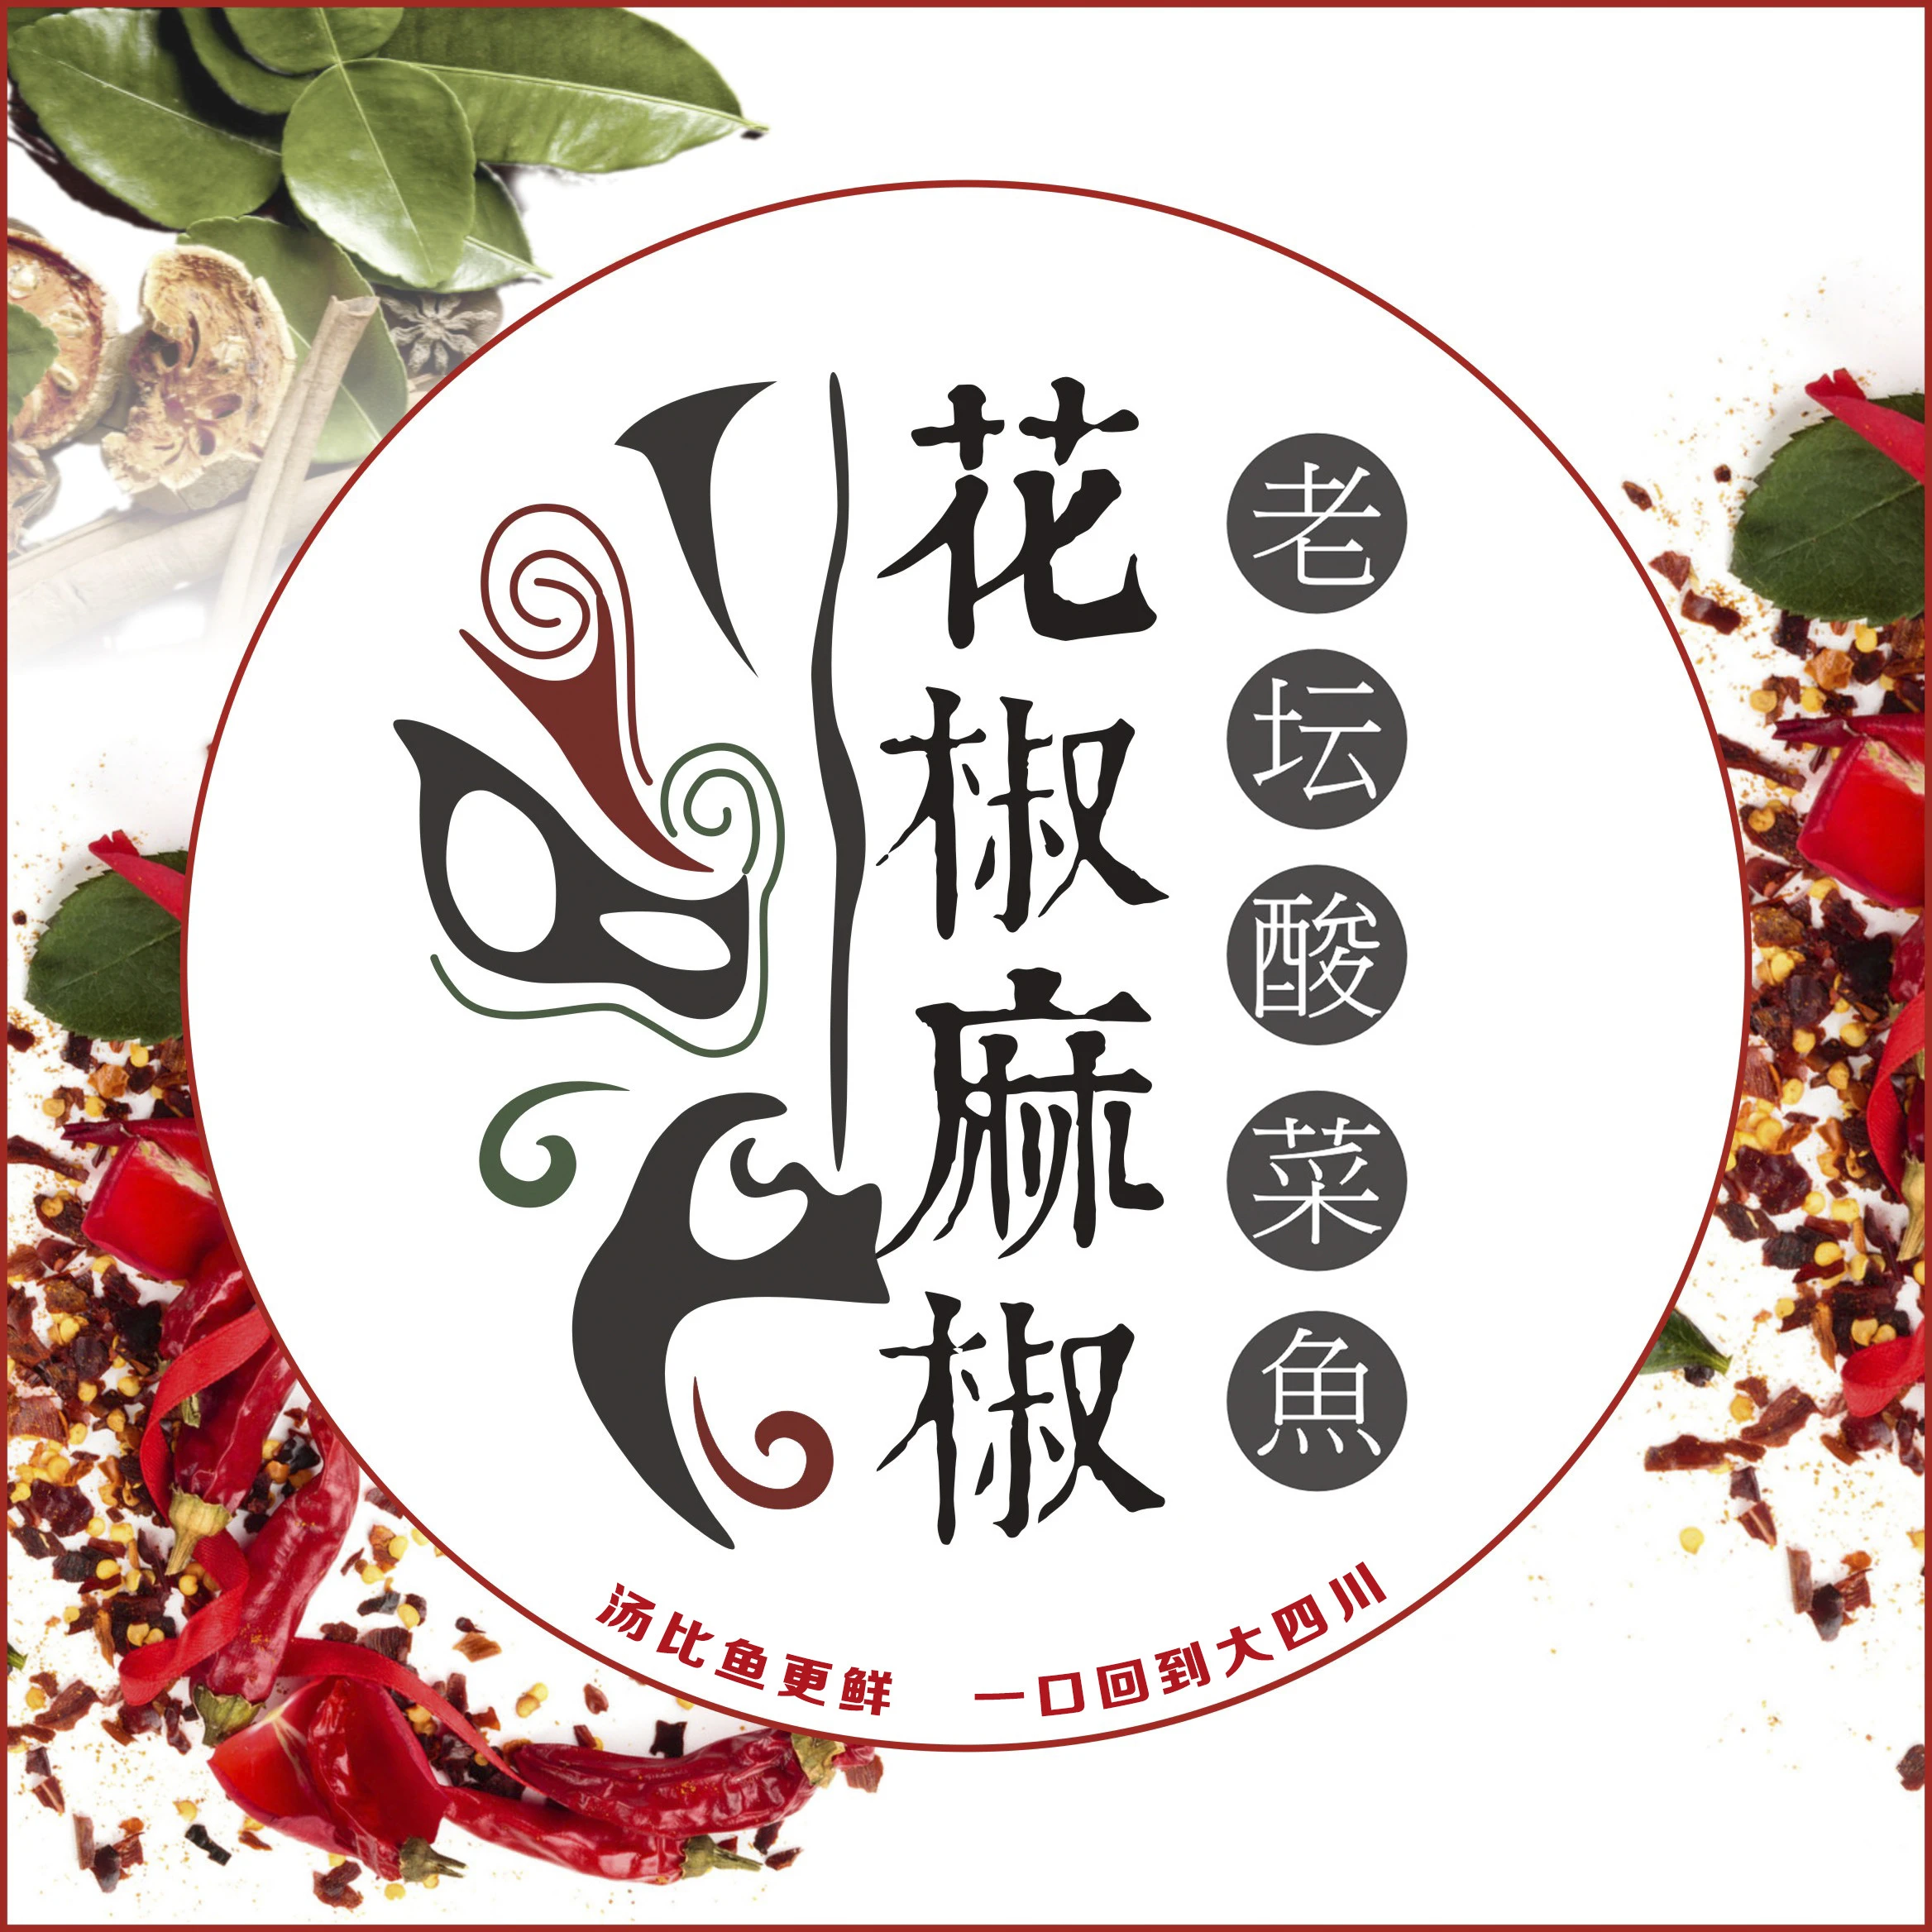 花椒麻椒·老坛酸菜魚加盟